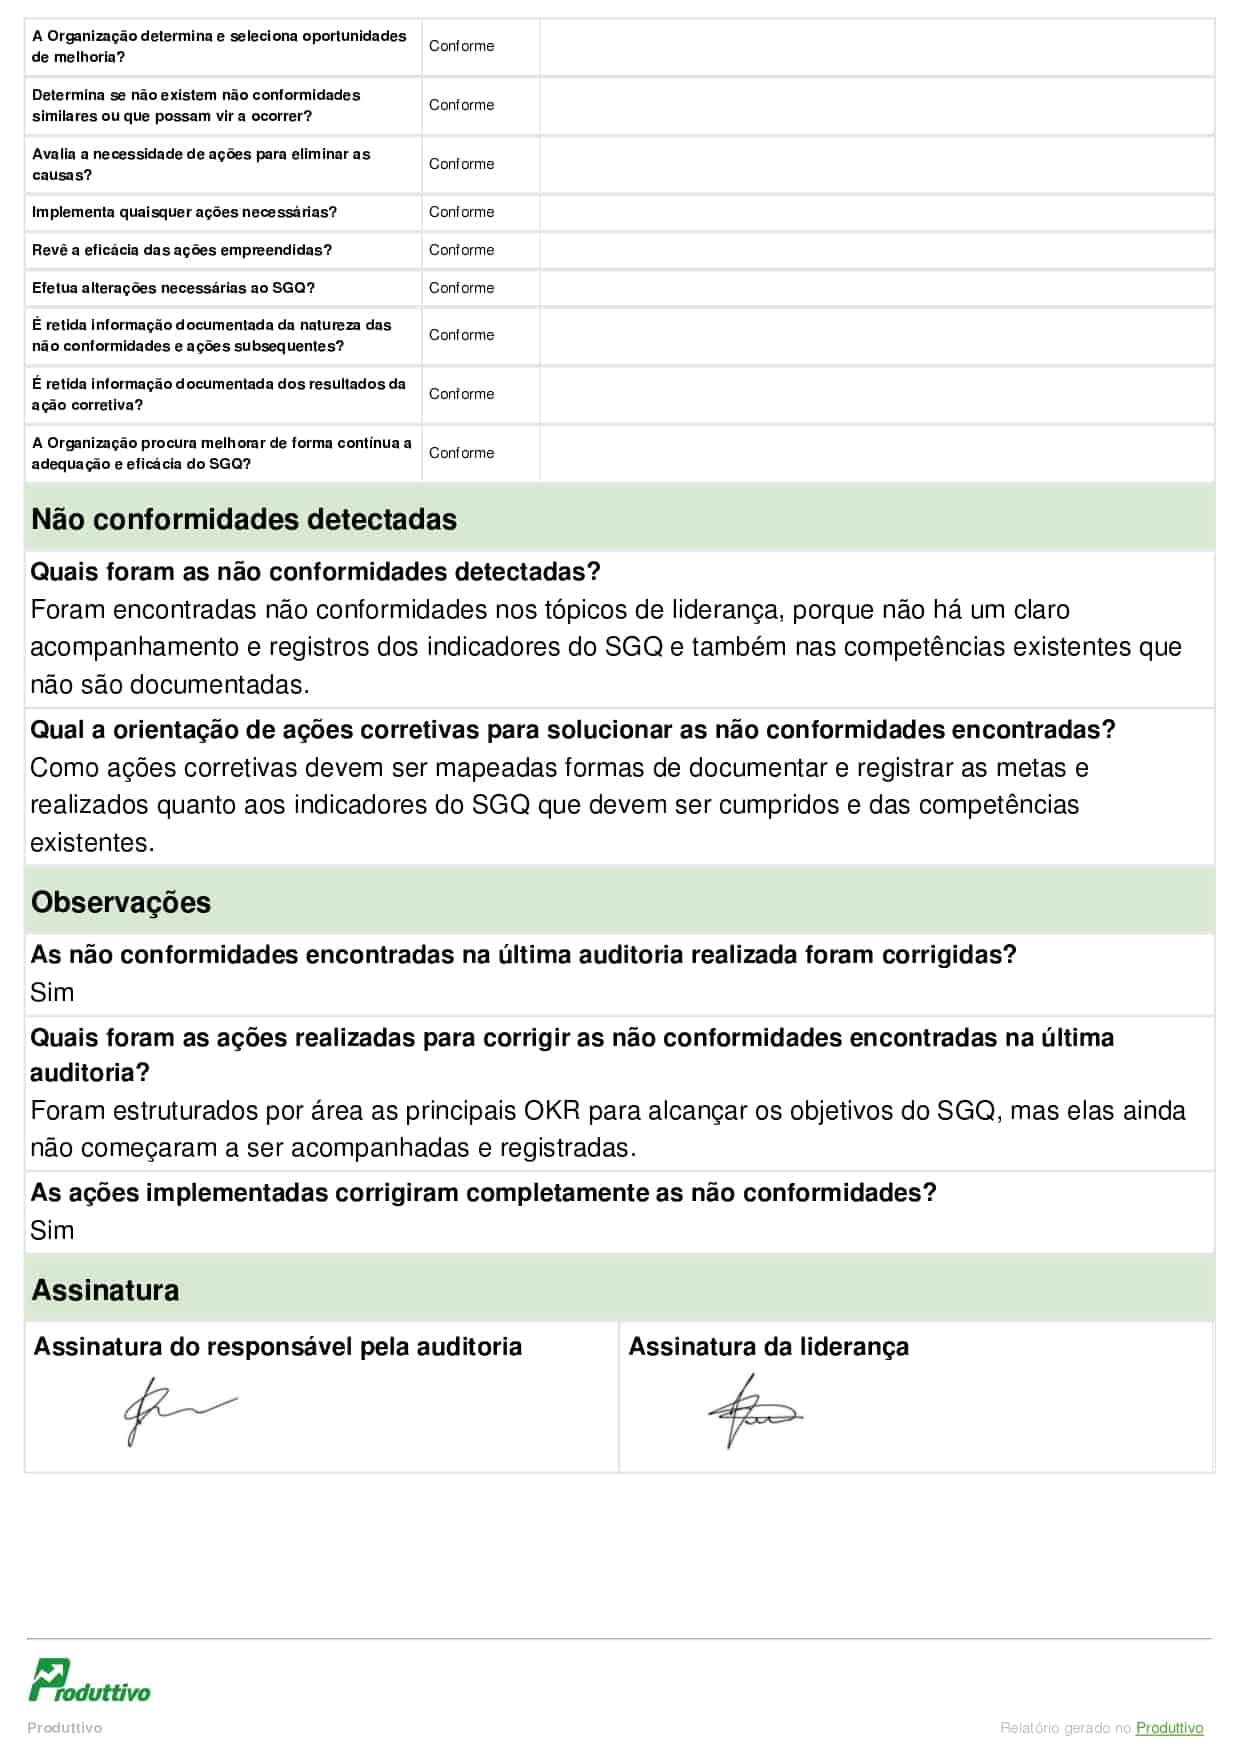 Modelo de checklist ISO digital gerado pelo Produttivo página 12